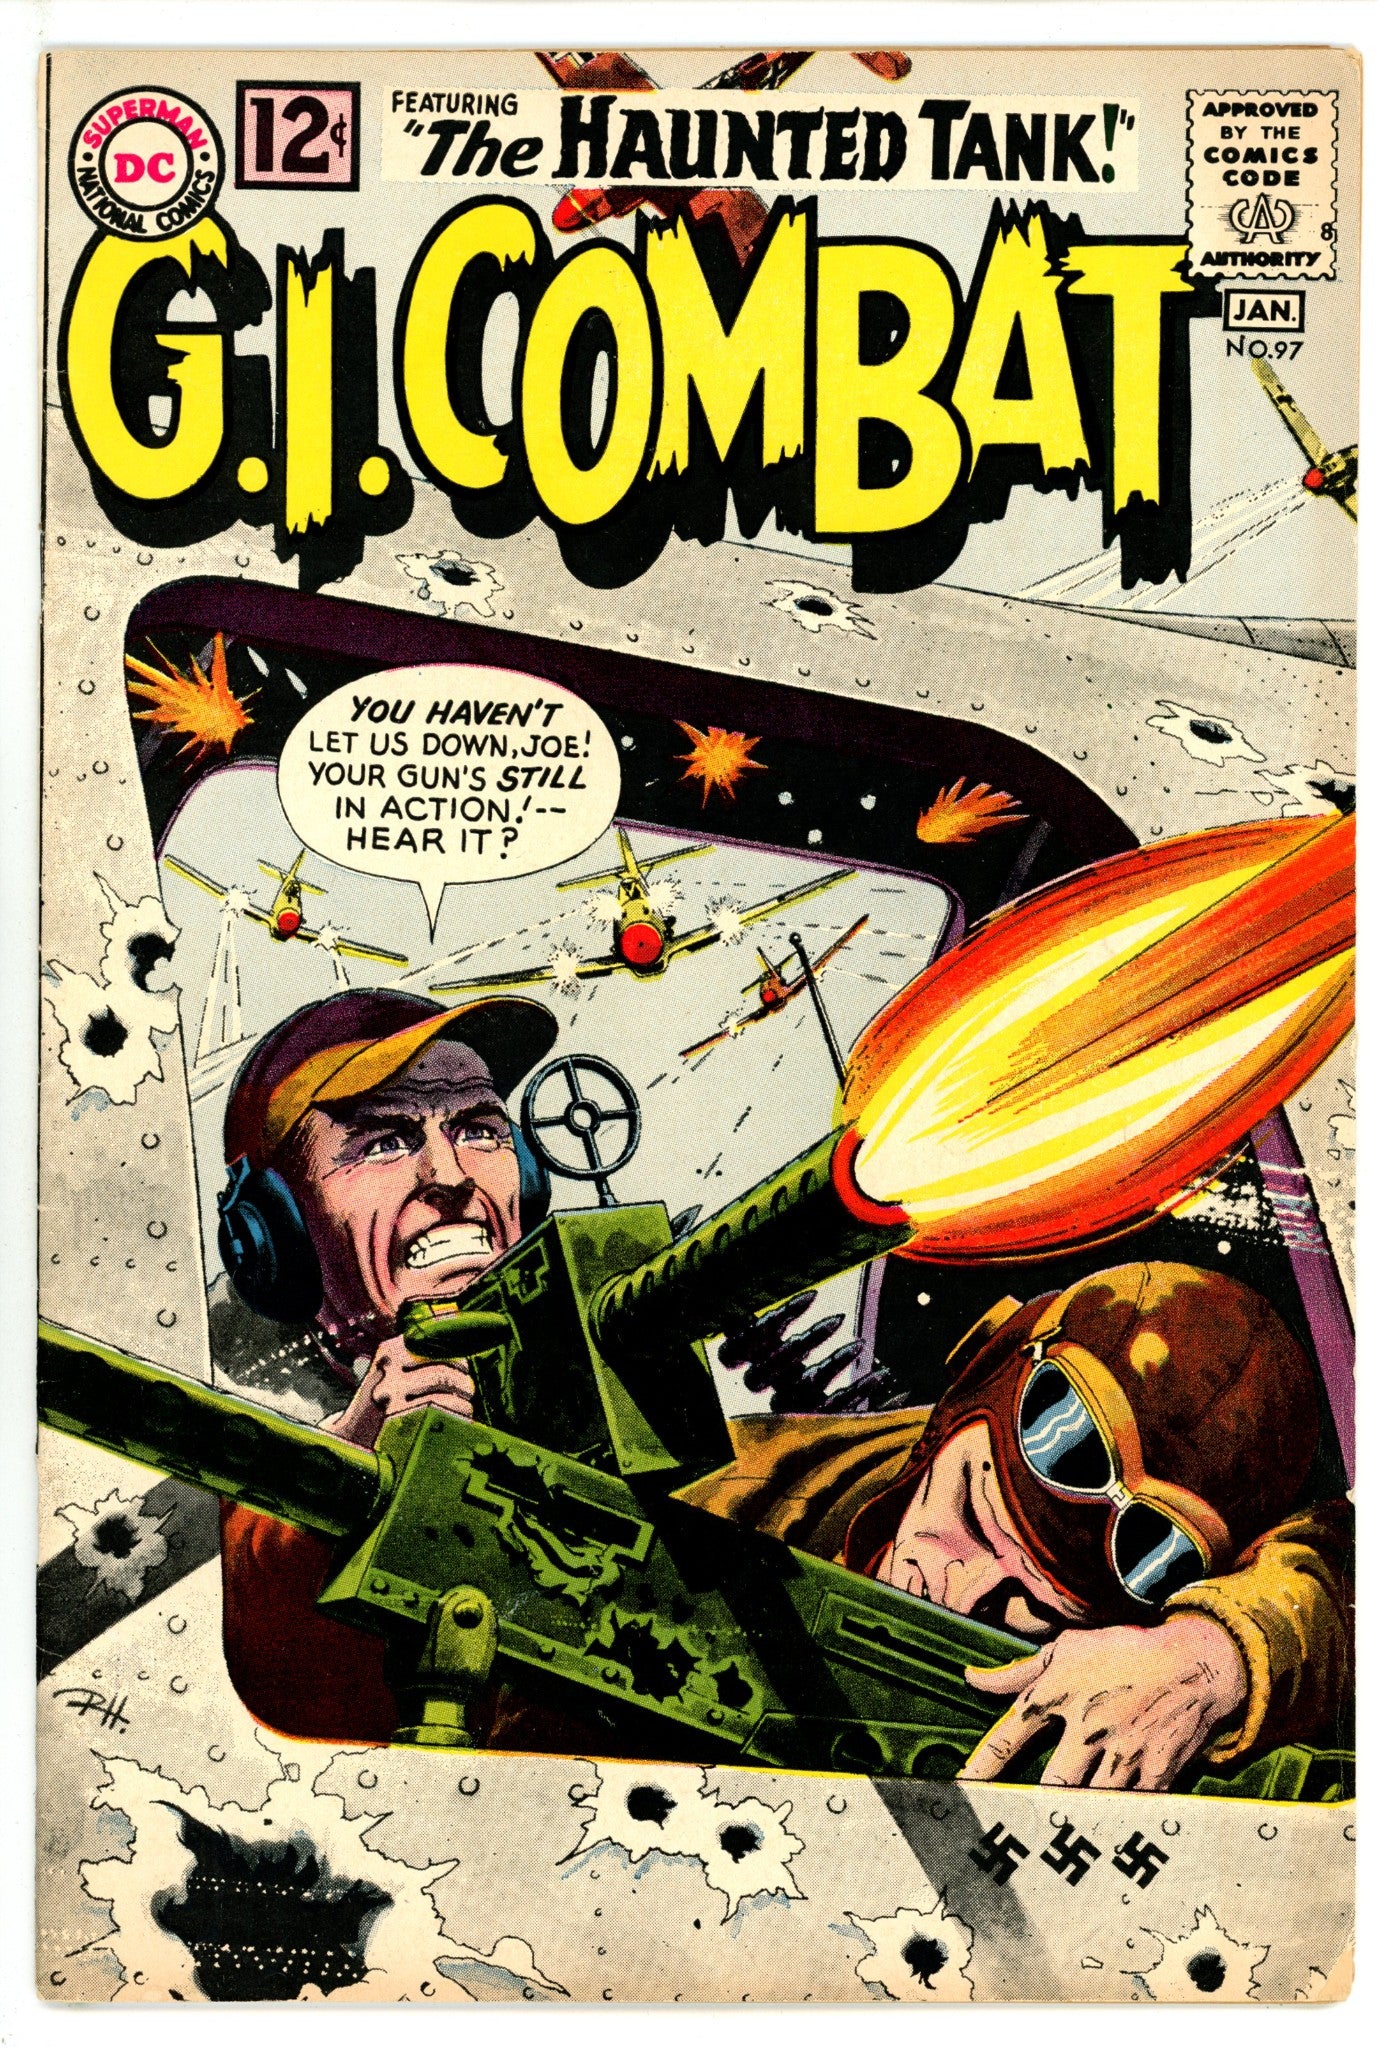 G.I. Combat Vol 1 97 VG+ (4.5) (1962) 